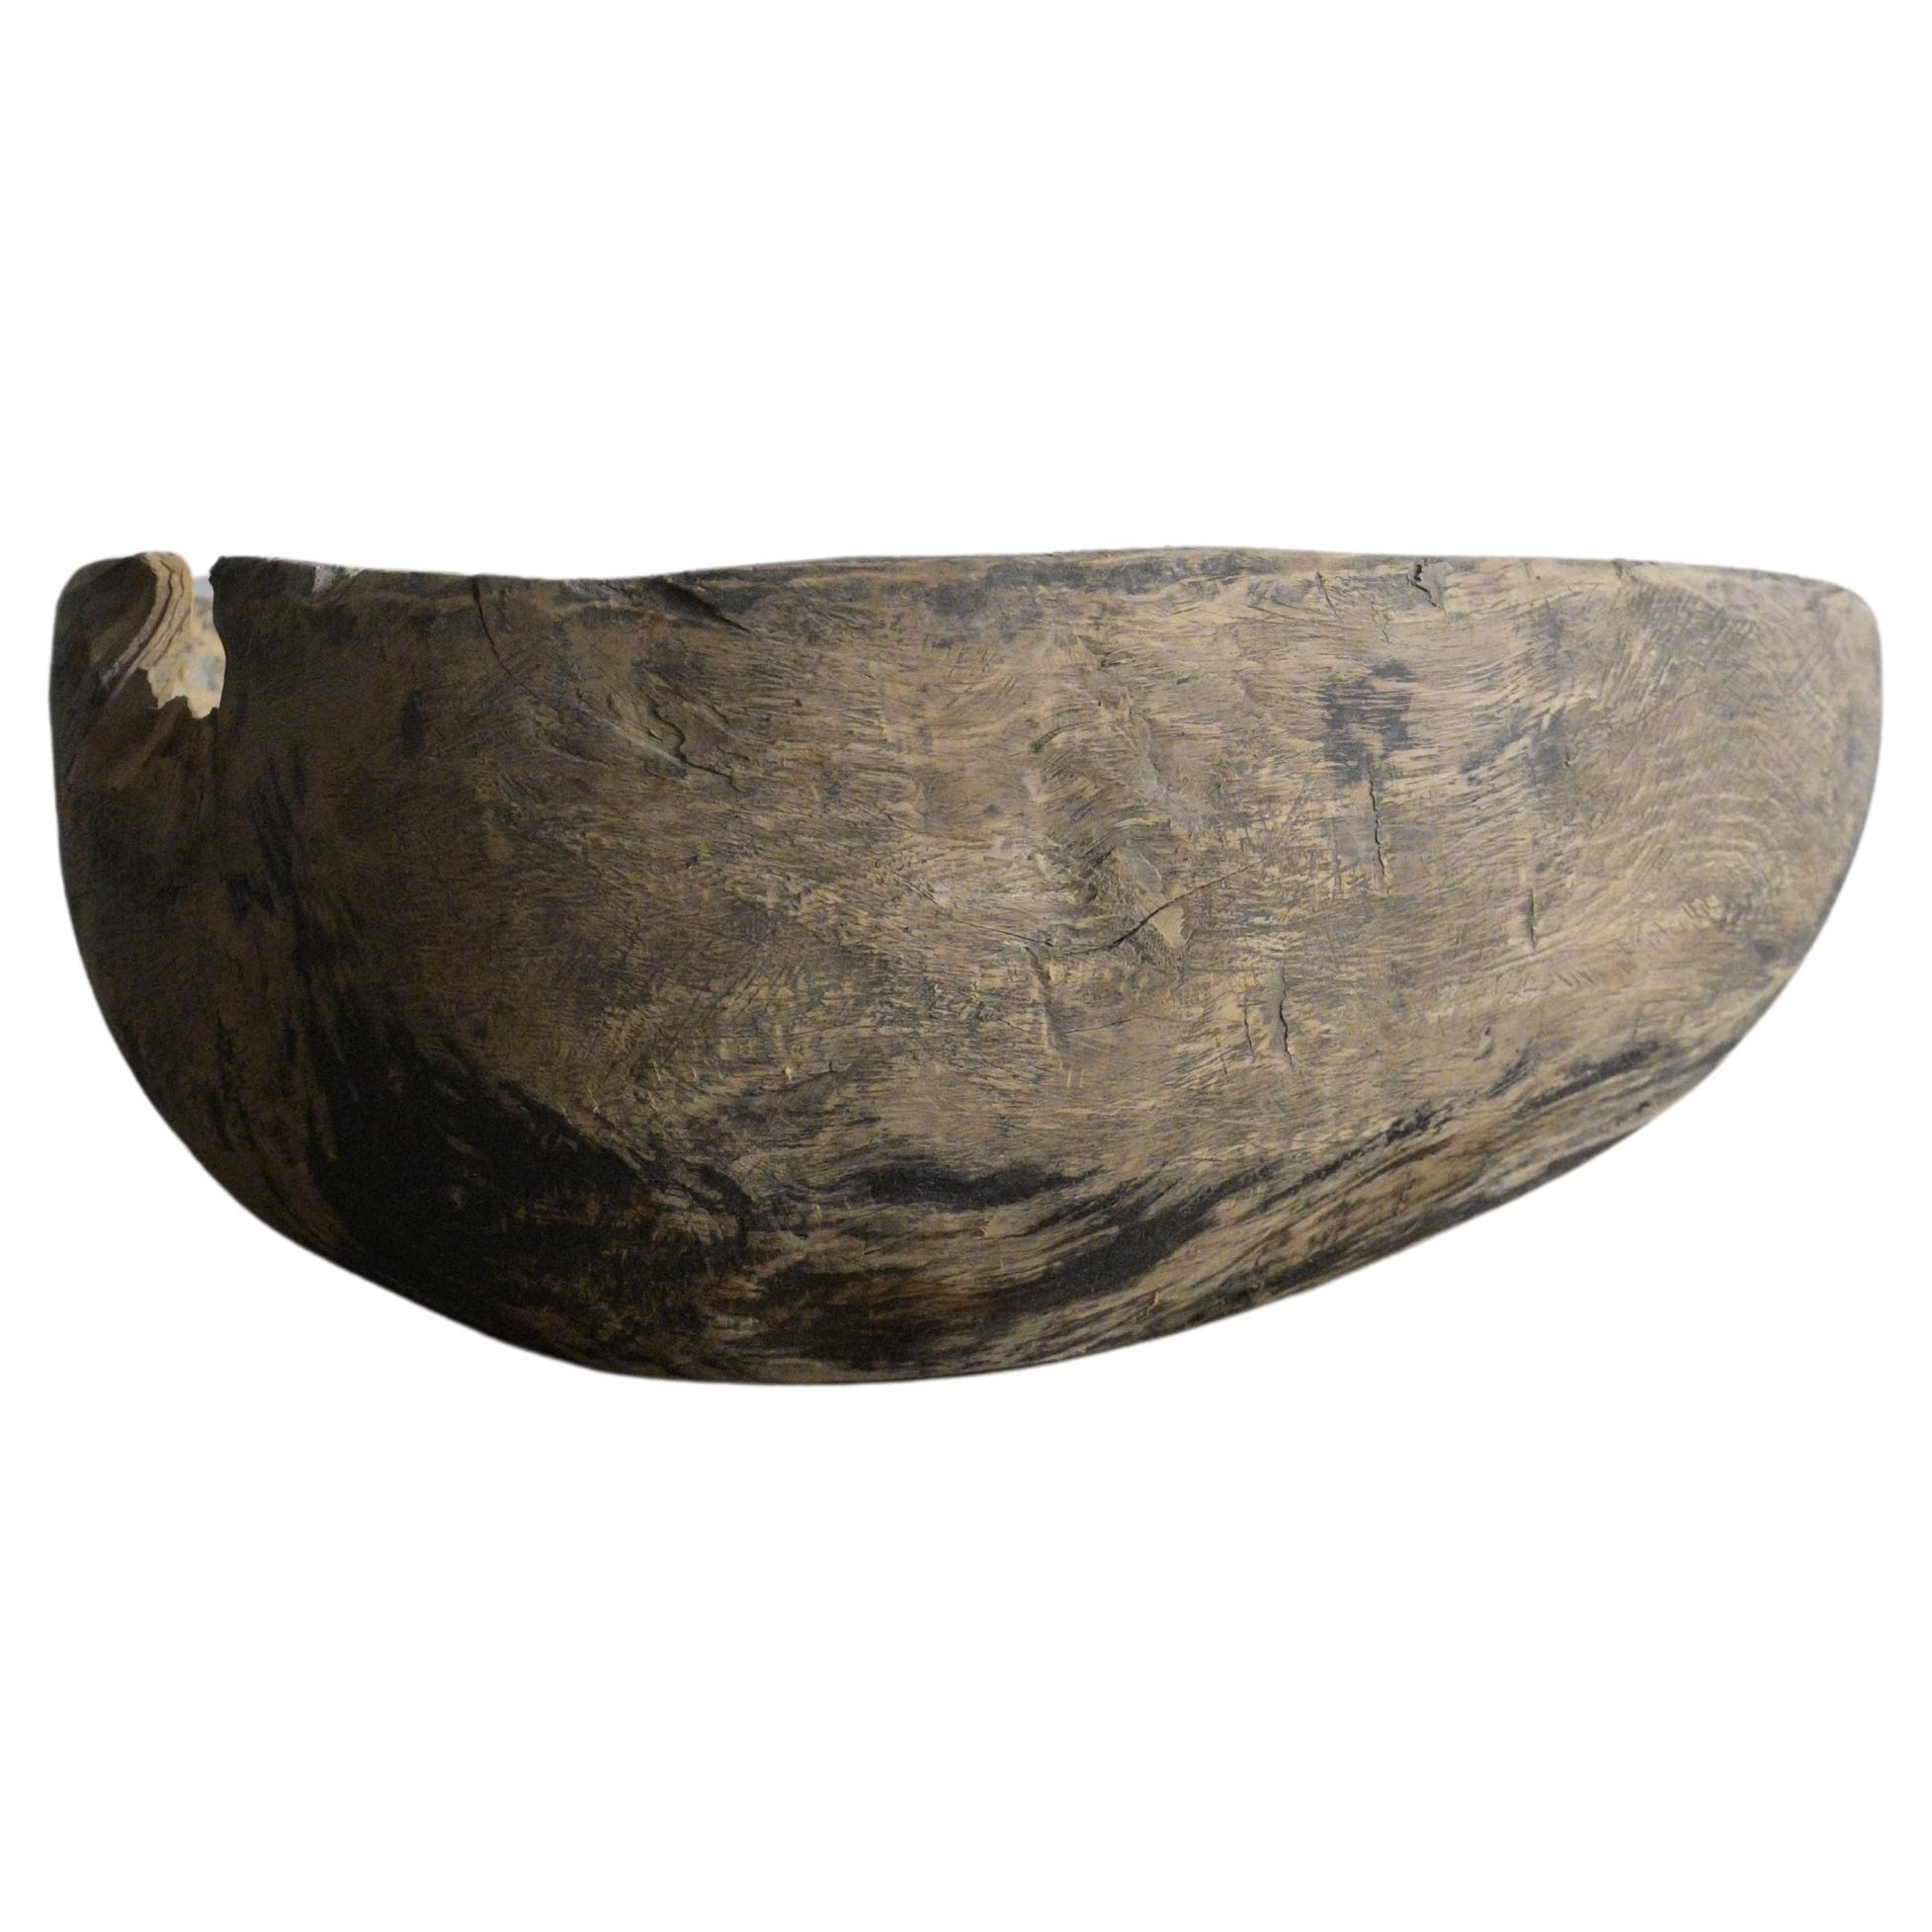 Large Rustic Birch Burl Bowl ca 1870